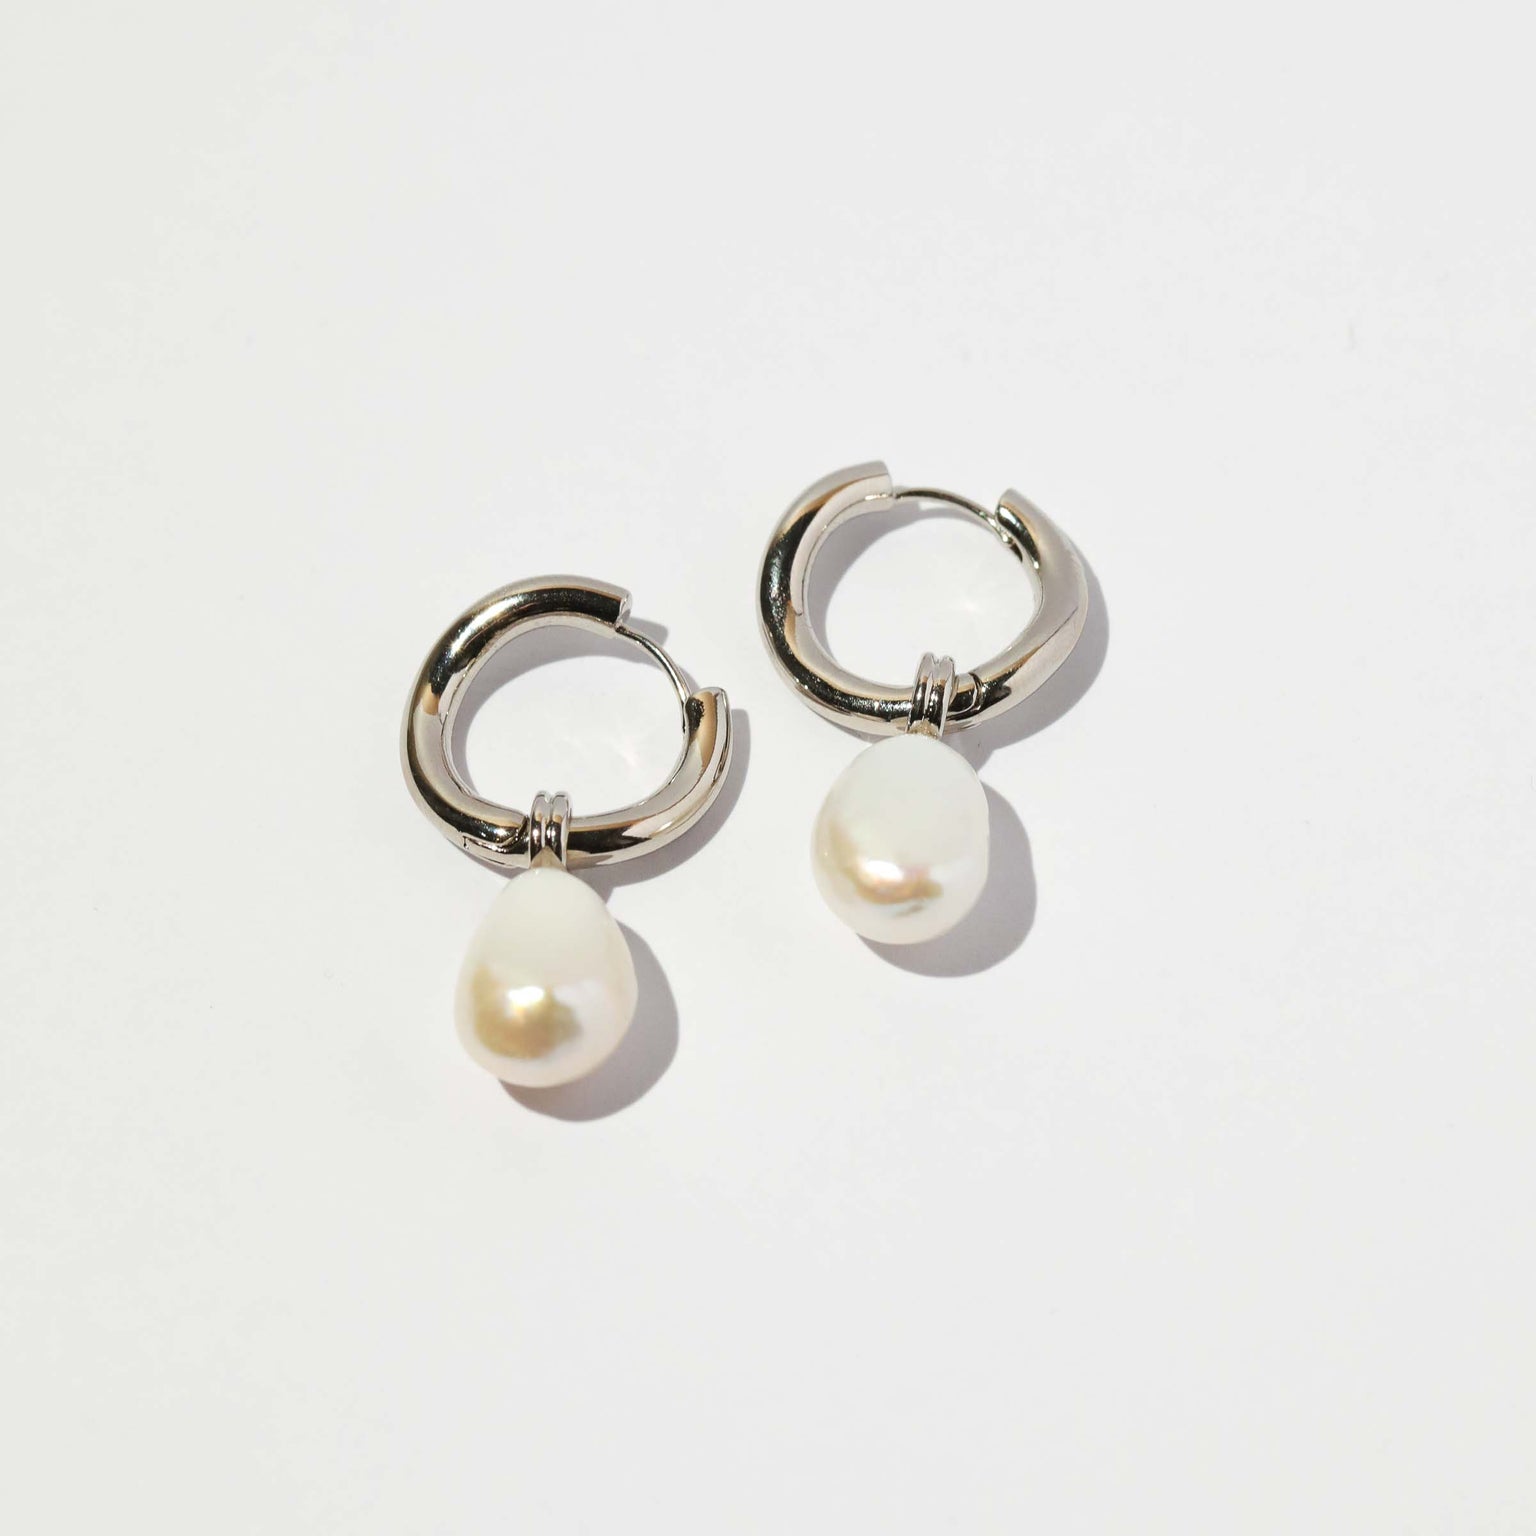 Astrid & Miyu | Elemental Huggies in Silver - 13mm | Twisted - Trendy Hoop Earrings for Her | Jewellery by Astrid & Miyu